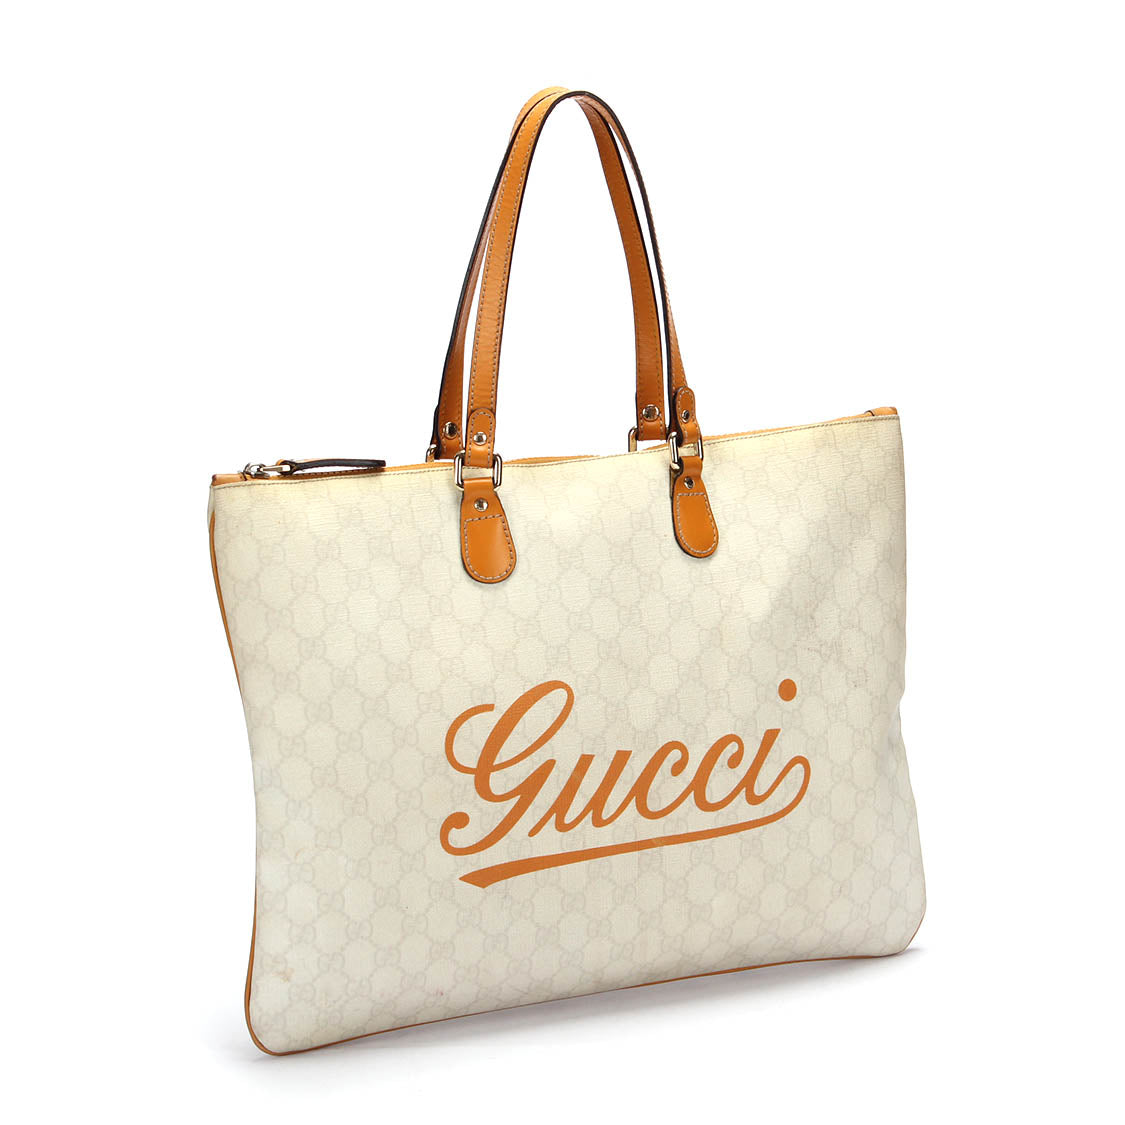 Gucci Tote袋212188